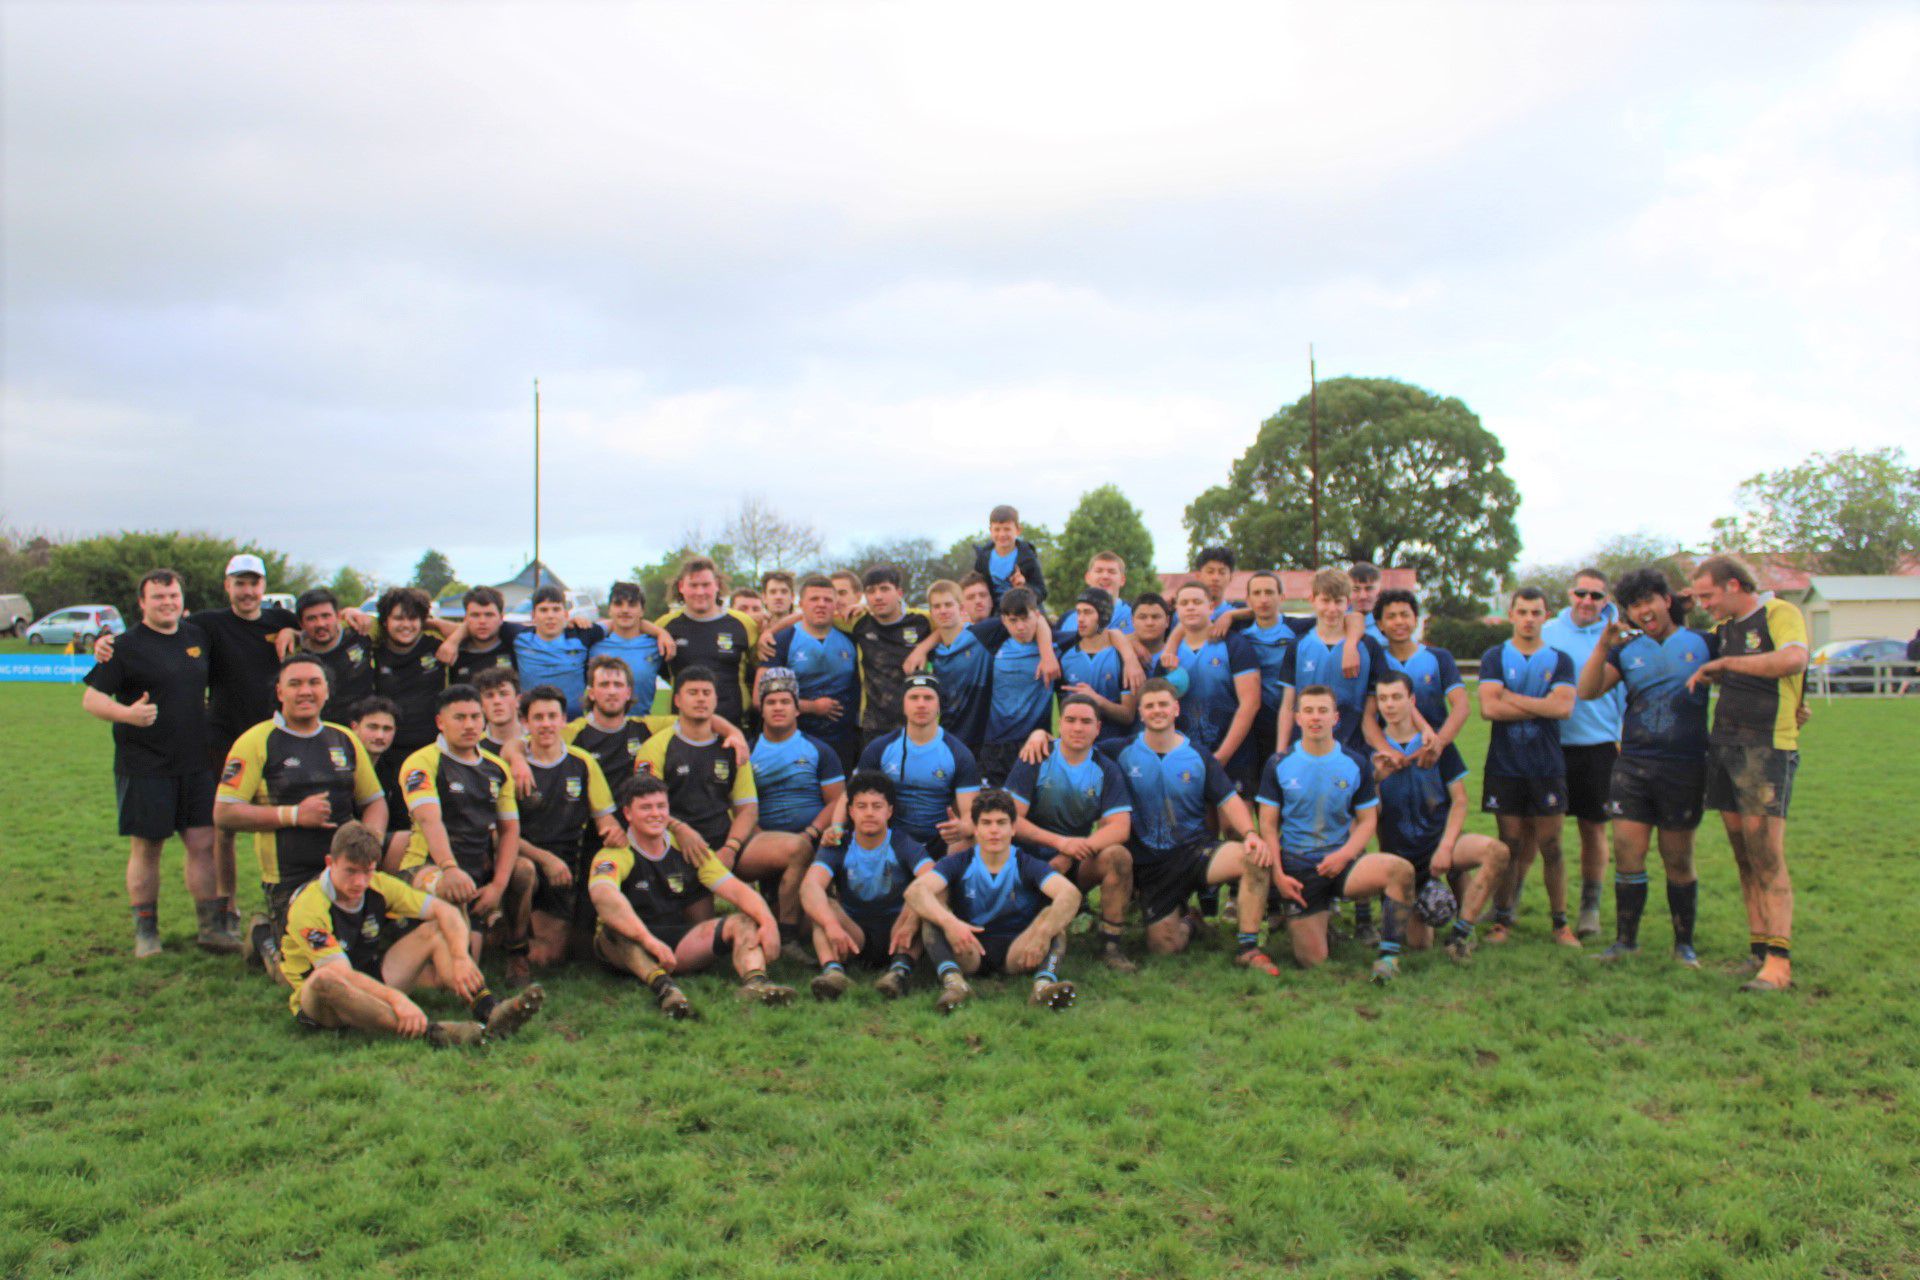 Dannevirke teens battle it out in friendly fixture on rugby field - NZ  Herald